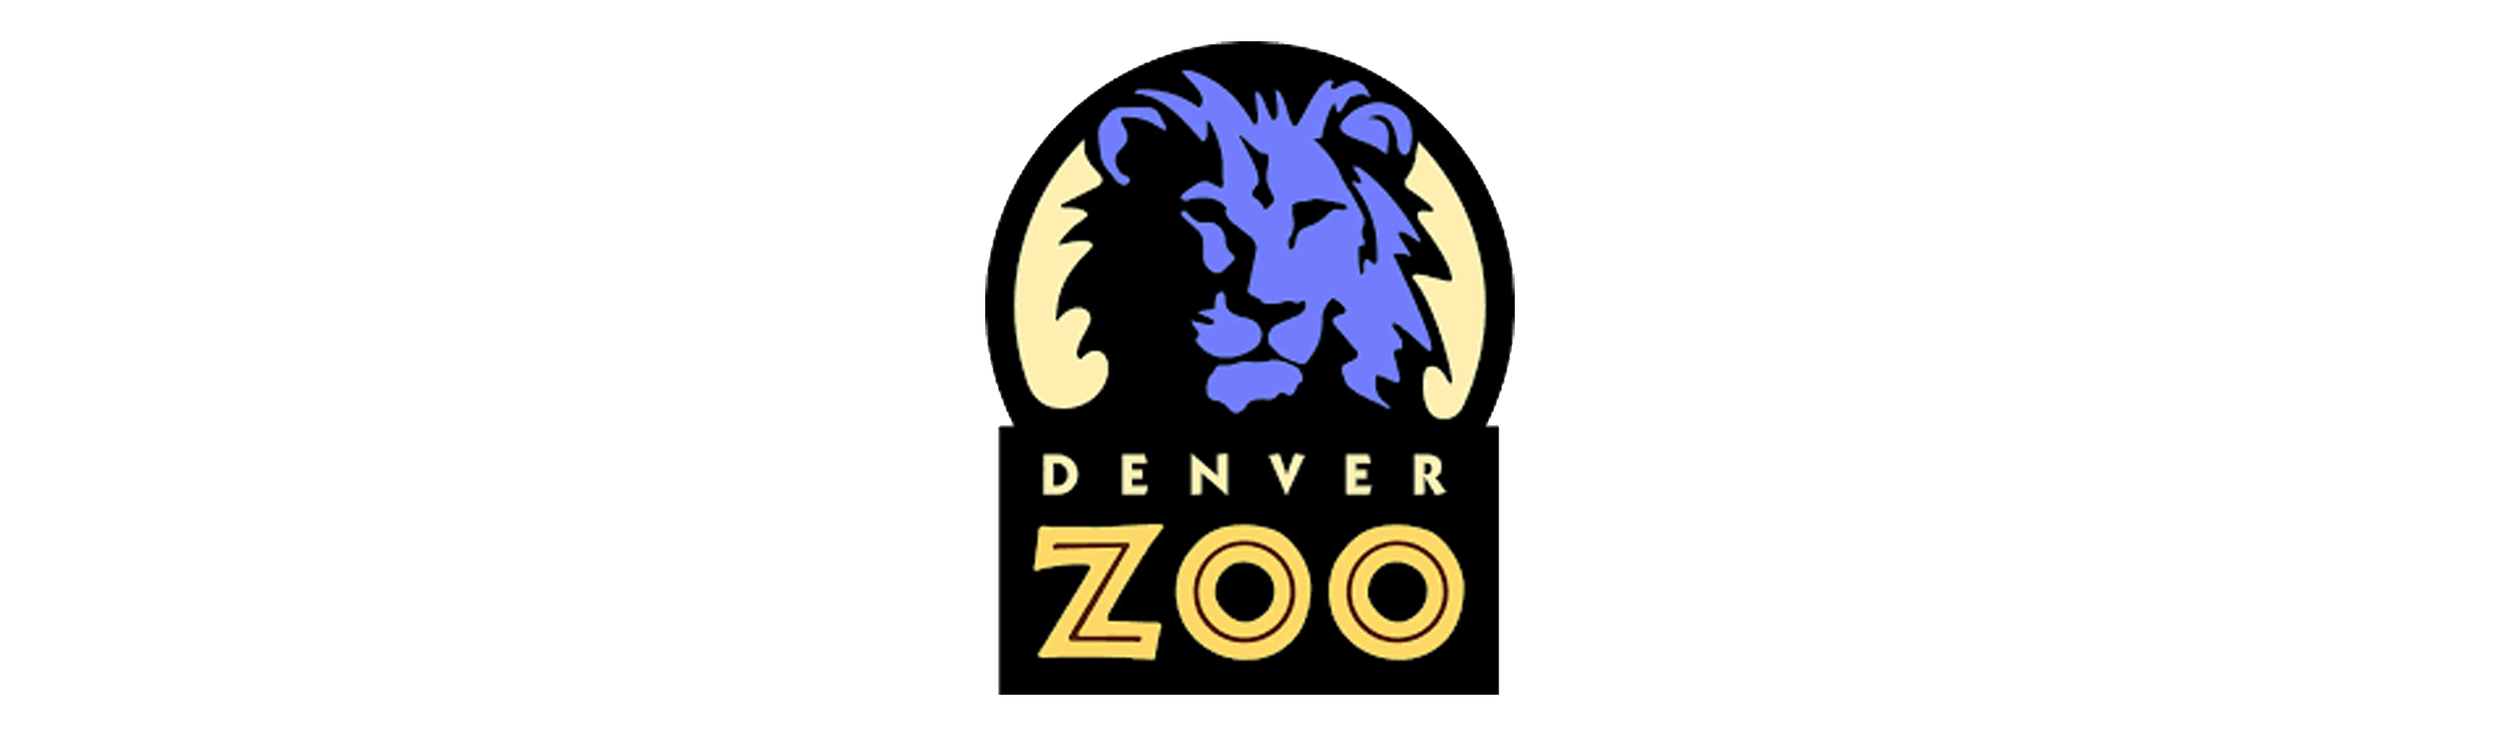 denver zoo logo.png